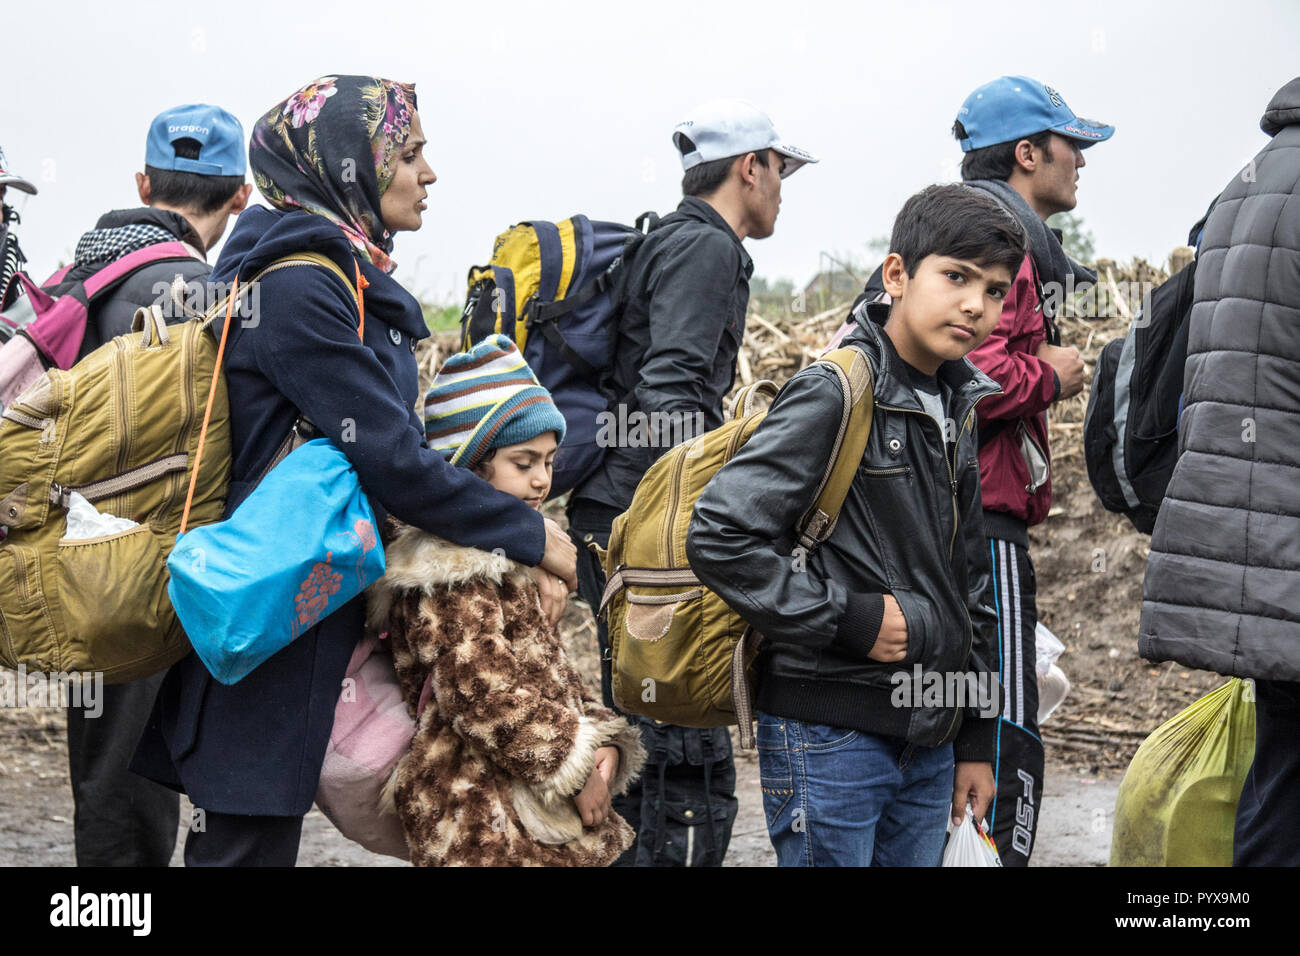 BERKASOVO, SERBIA - Ottobre 17, 2015: gruppo di rifugiati, principalmente bambini, in attesa di attraversare la Croazia Serbia, il confine tra la città di Bapska e Foto Stock